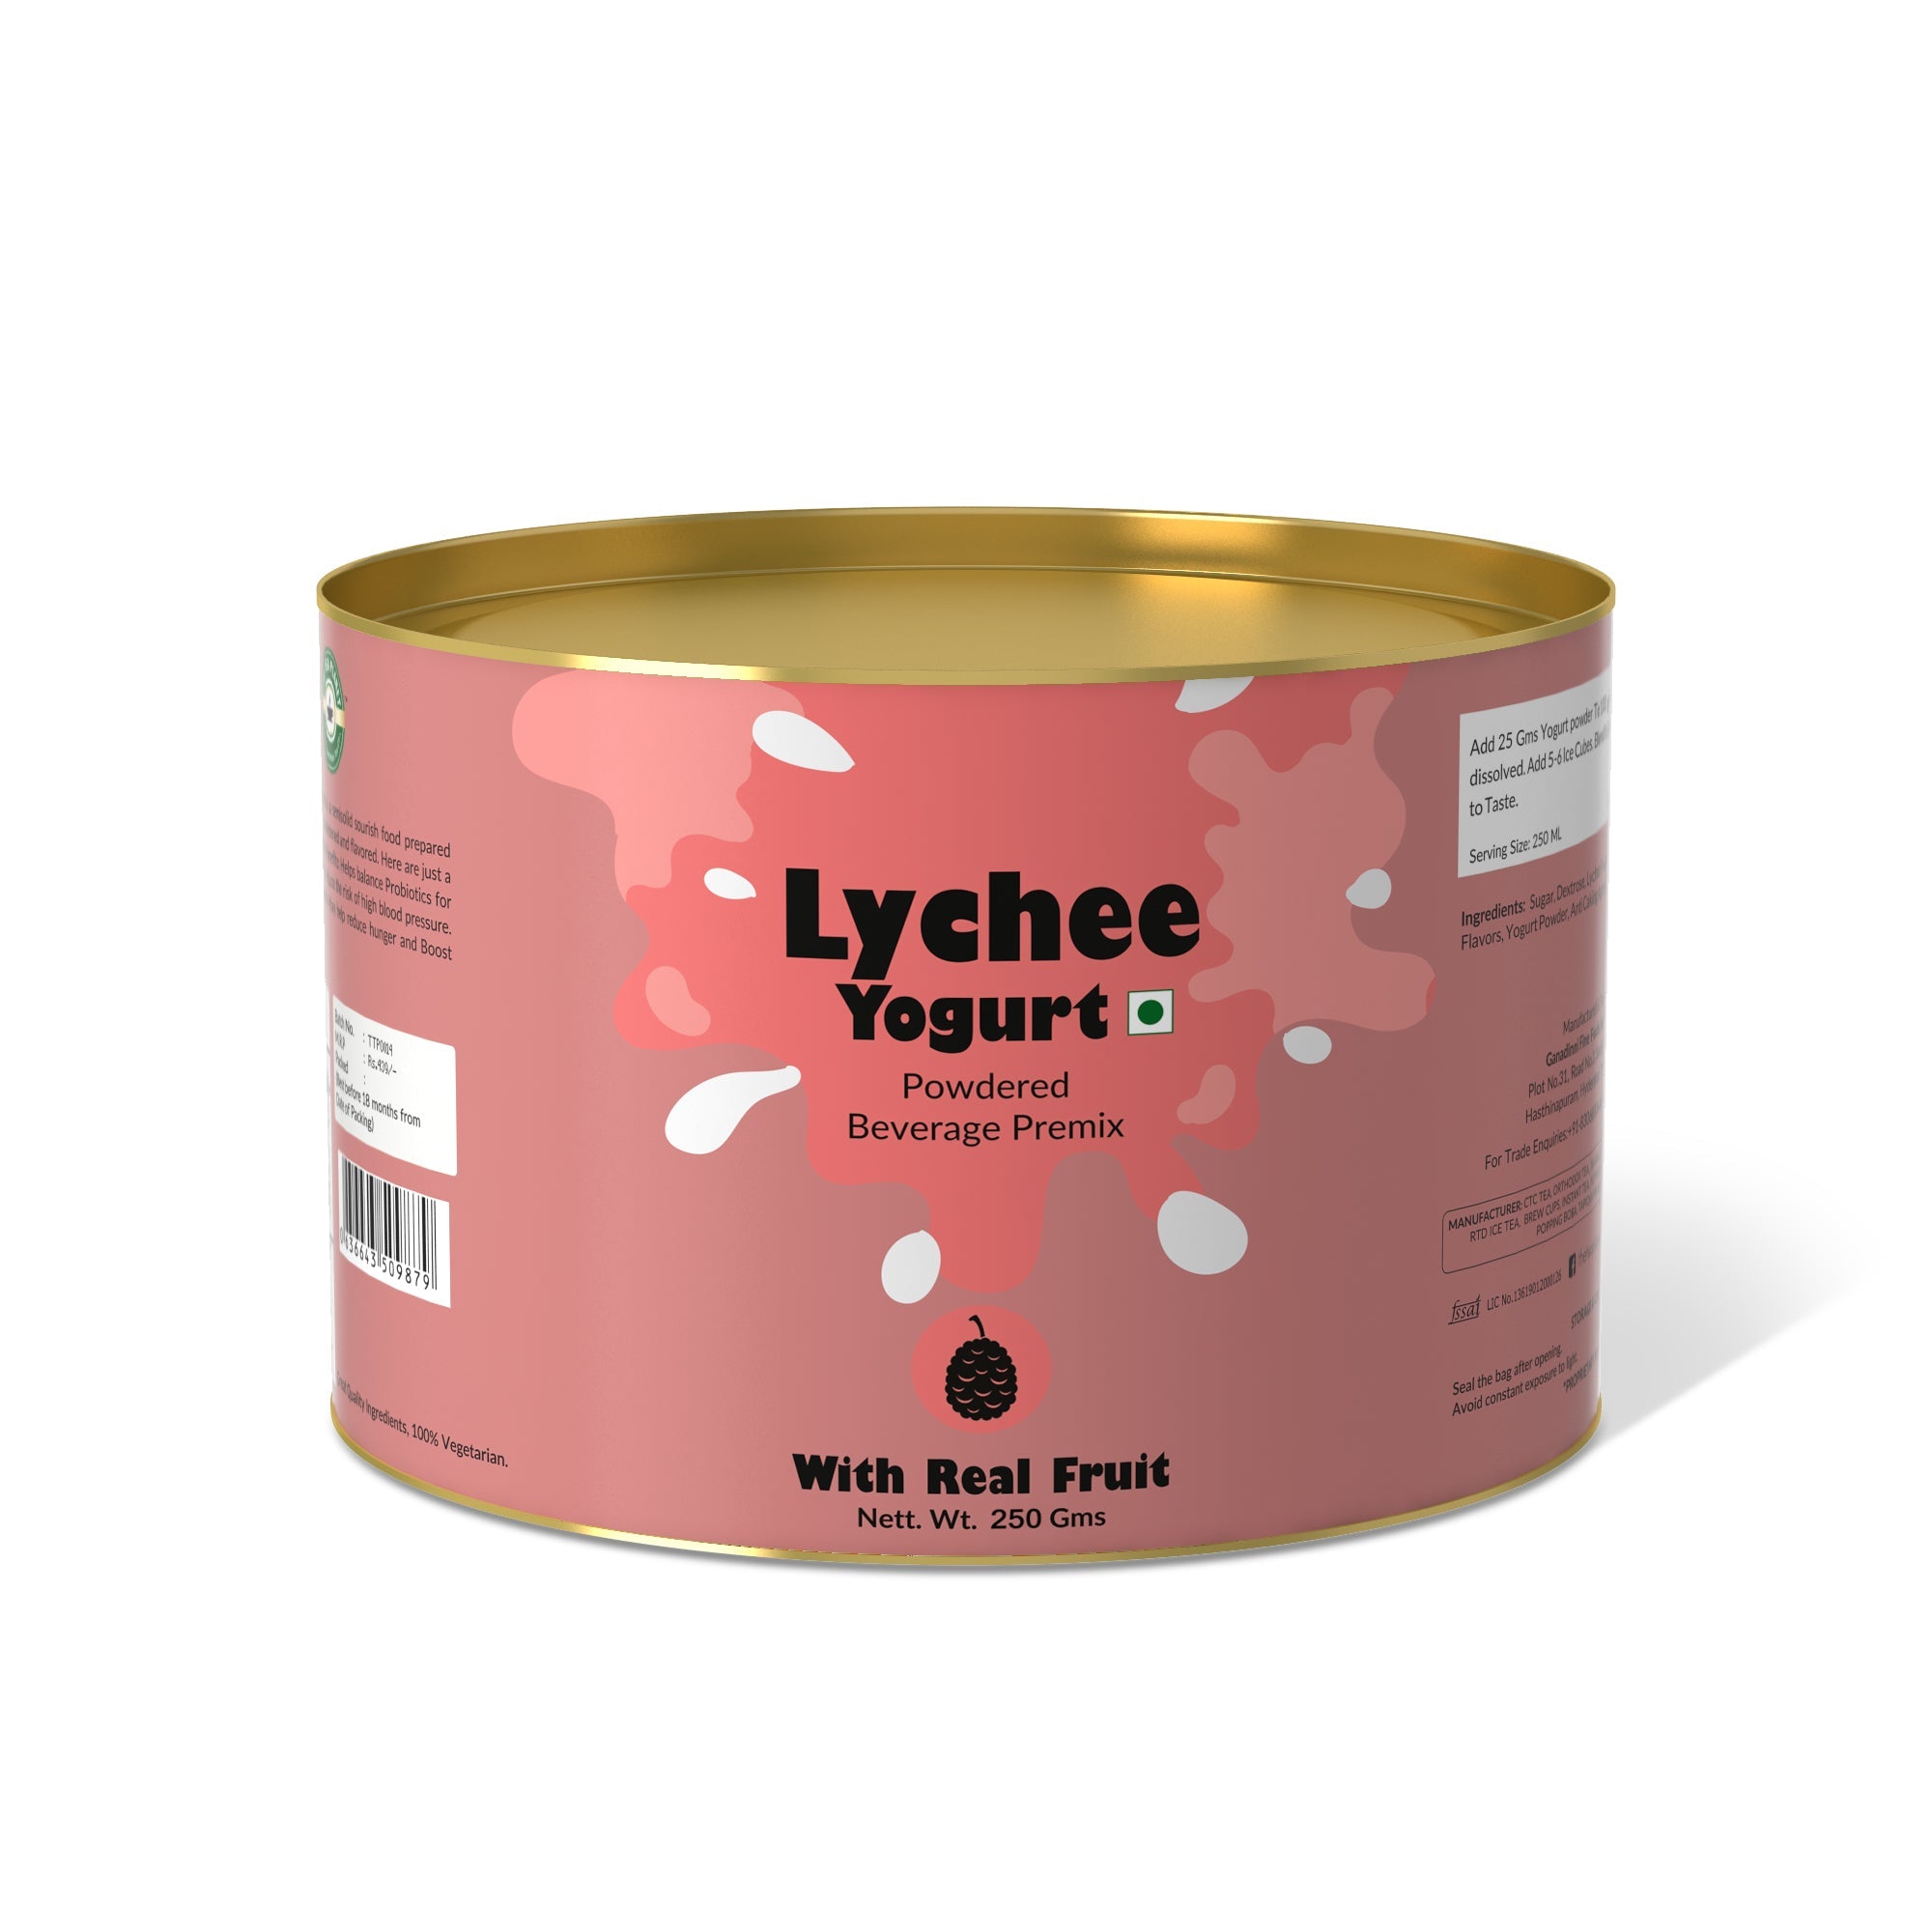 Lychee Yogurt Mix - 250 gms